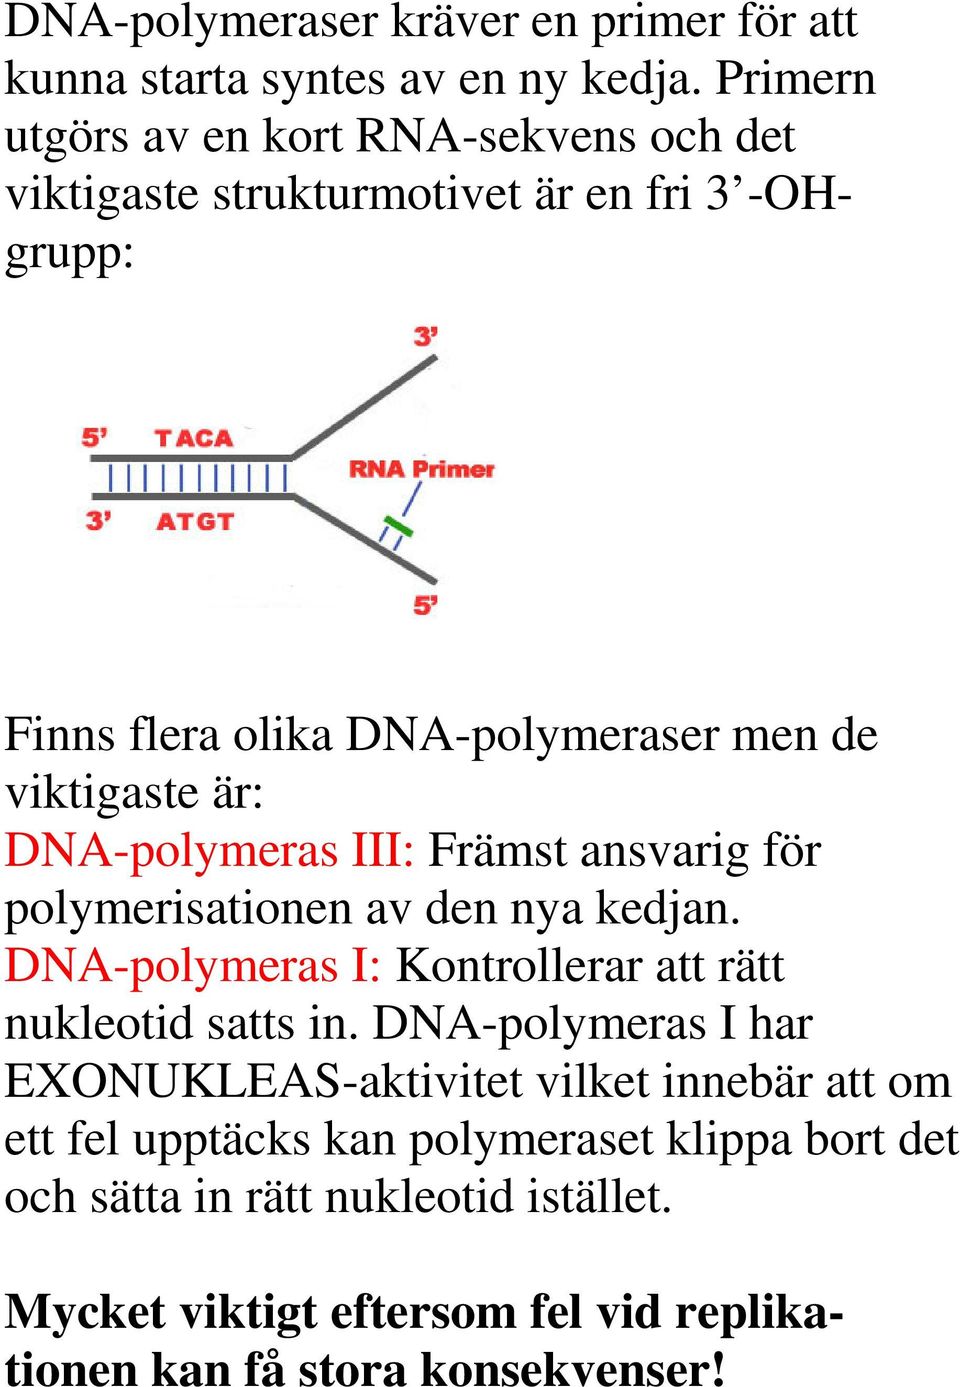 viktigaste är: DNA-polymeras III: Främst ansvarig för polymerisationen av den nya kedjan.